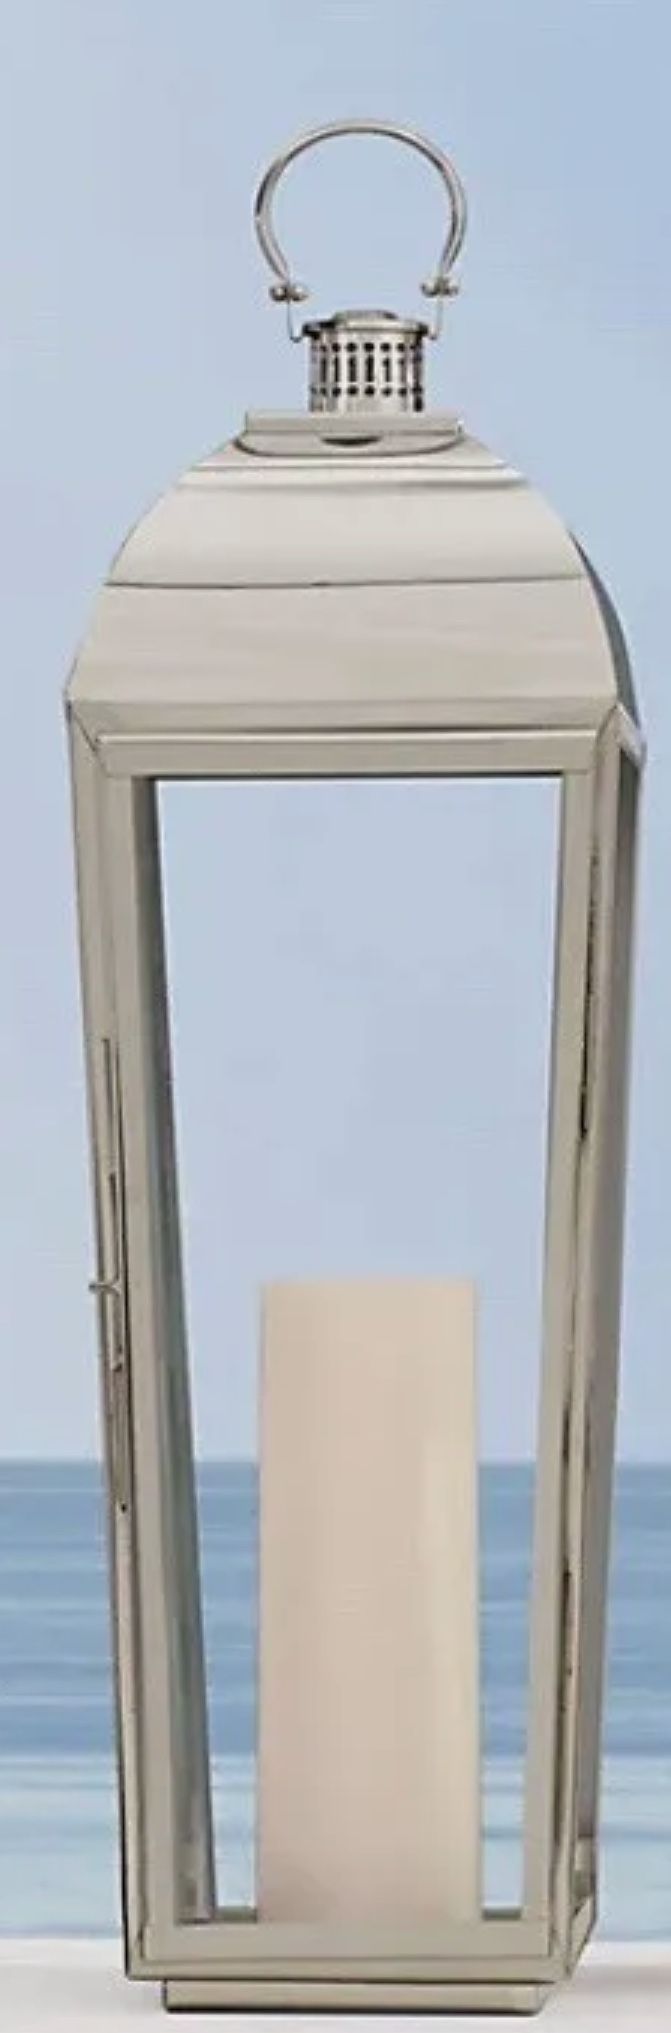 3x Restoration Hardware Trieste Lantern Tall Nickle